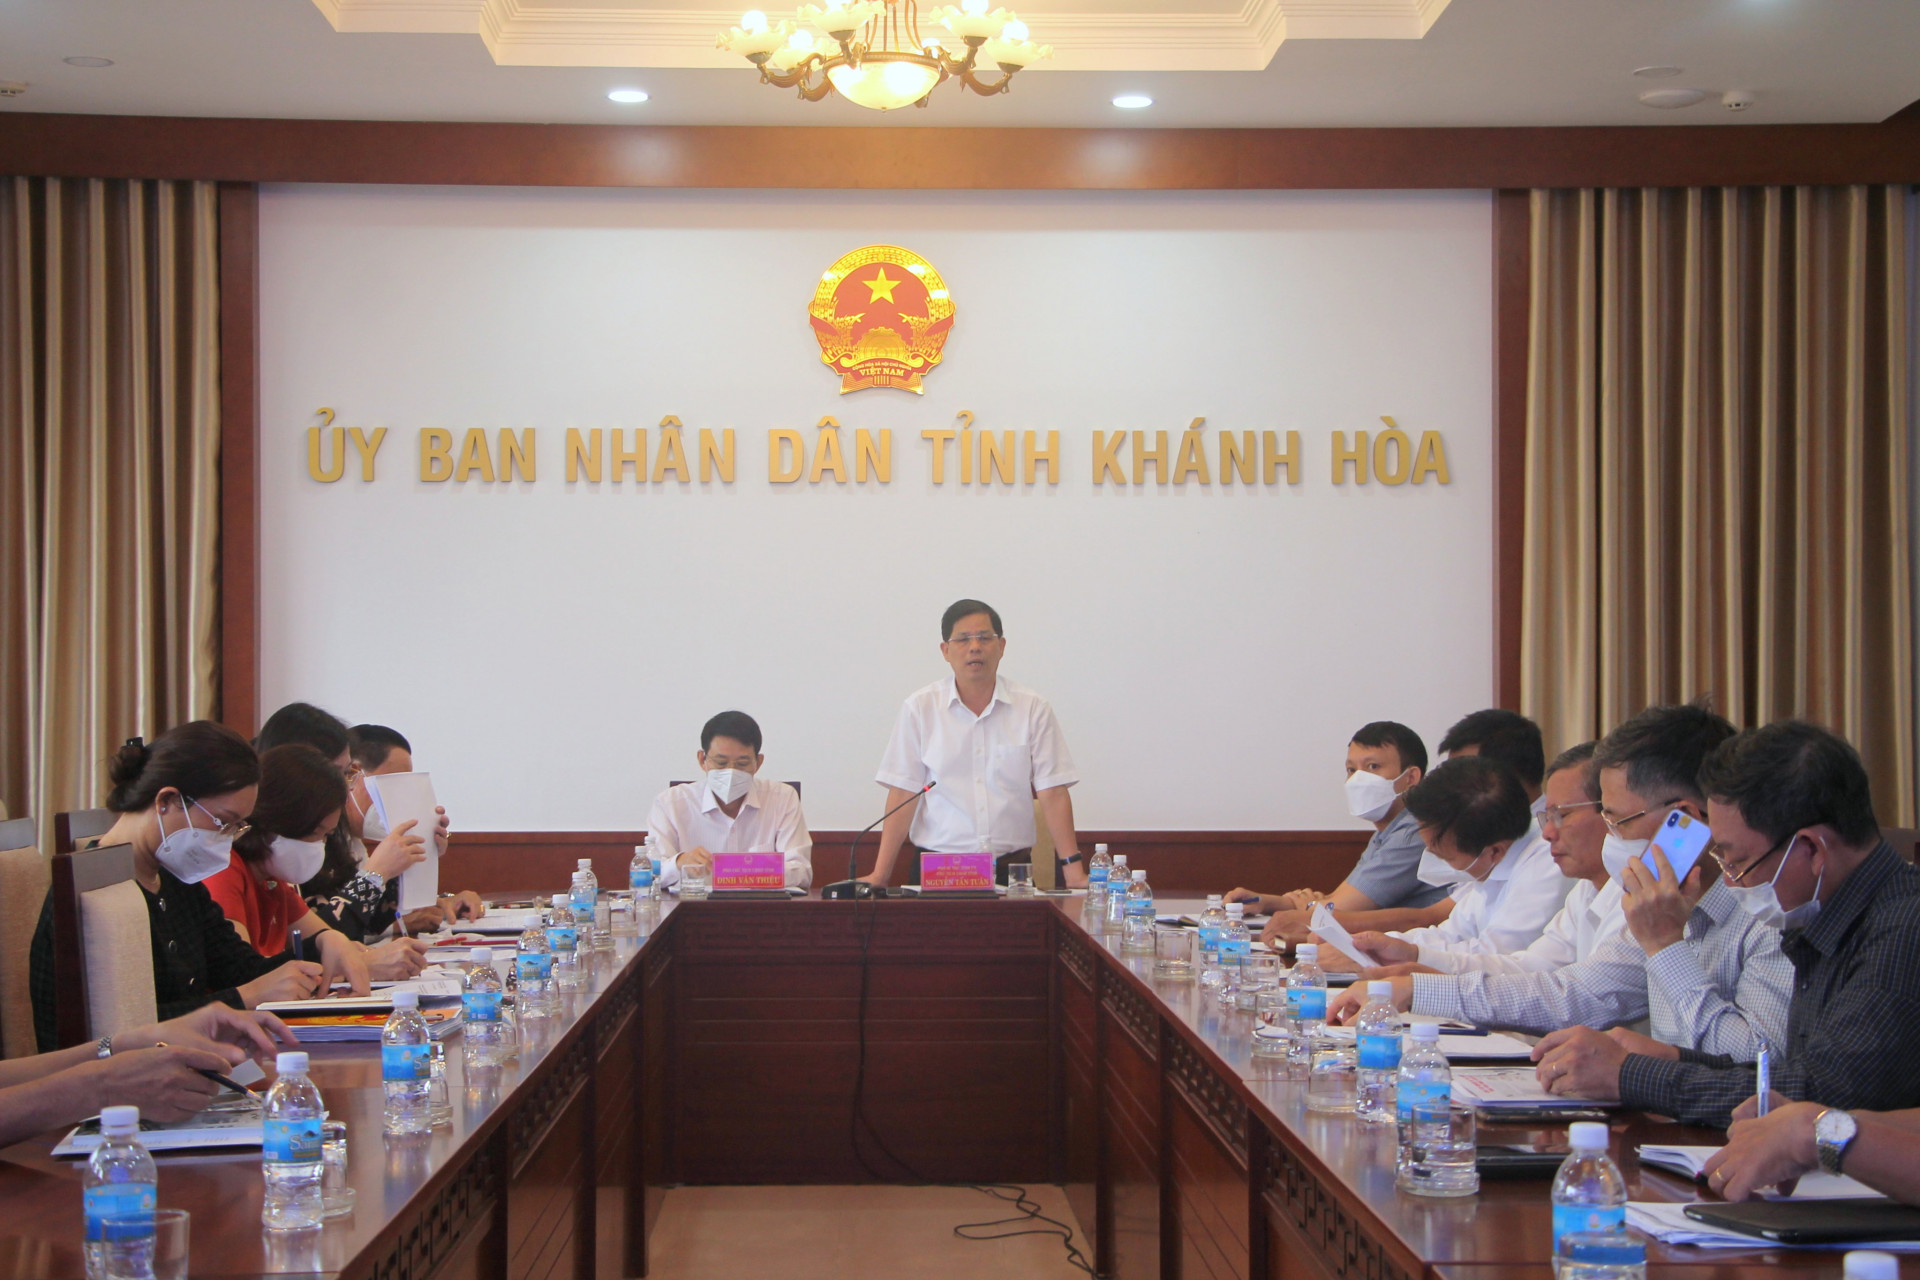 Ông Nguyễn Tấn Tuân - Phó Bí thư Tỉnh ủy, Chủ tịch UBND tỉnh phát biểu tại cuộc họp.